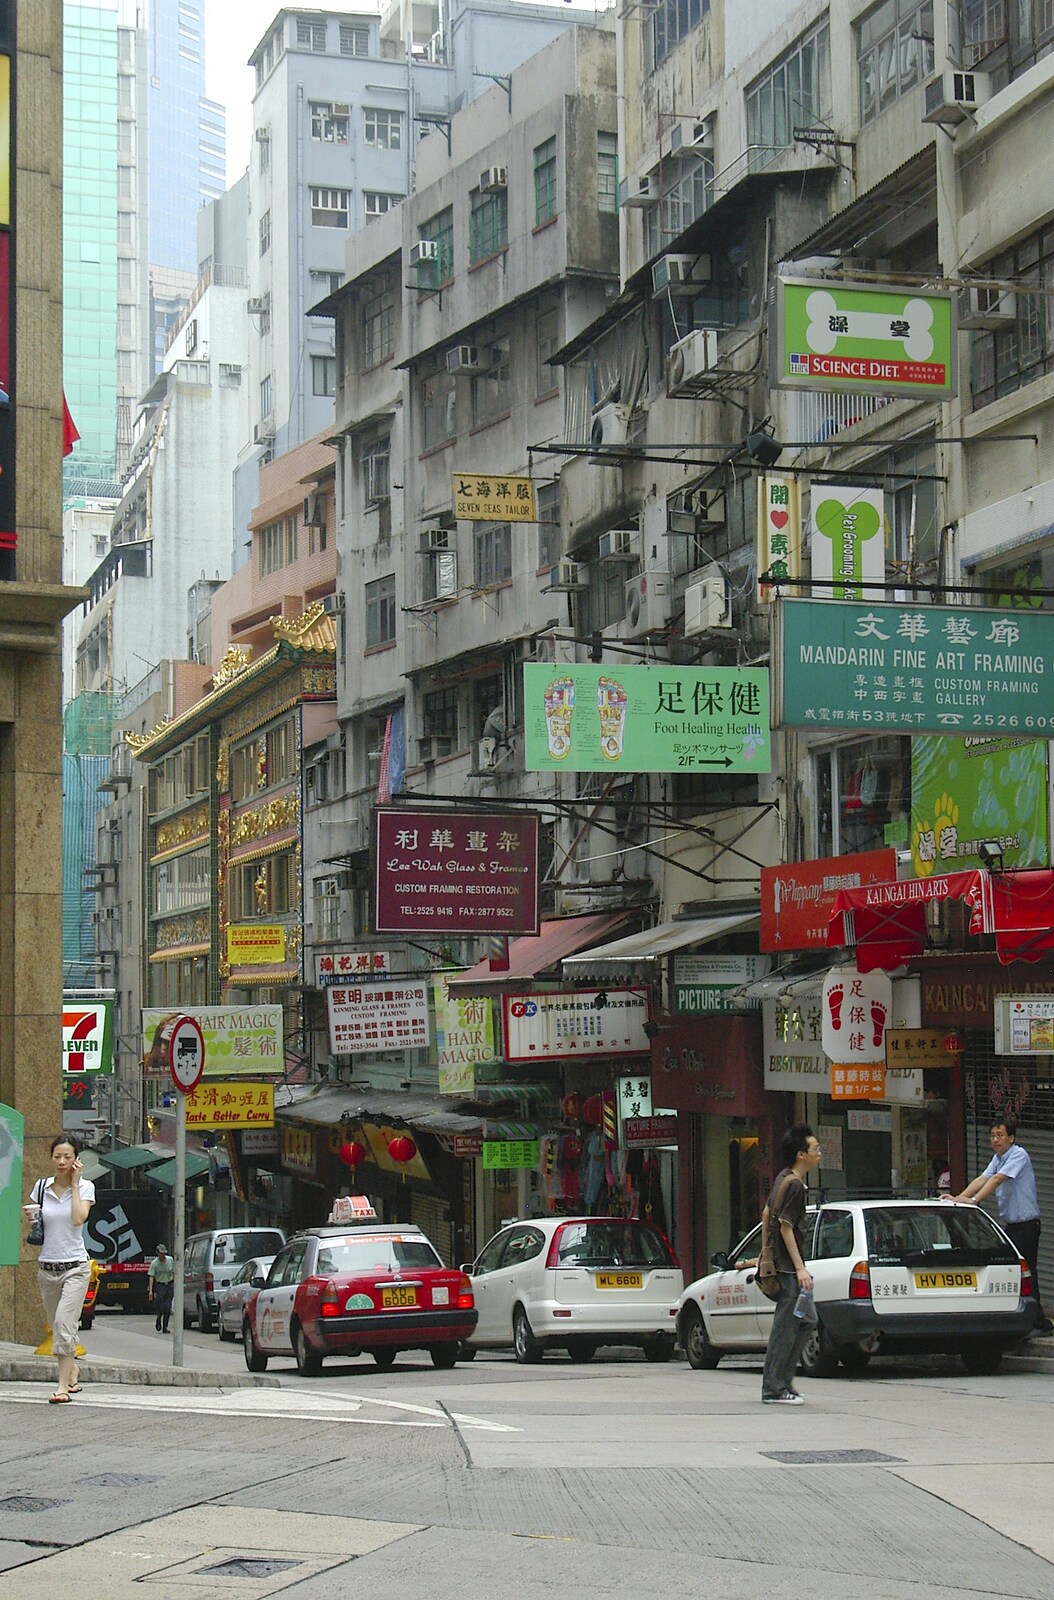 More apartments from Wan Chai and Central, Hong Kong, China - 2nd October 2006